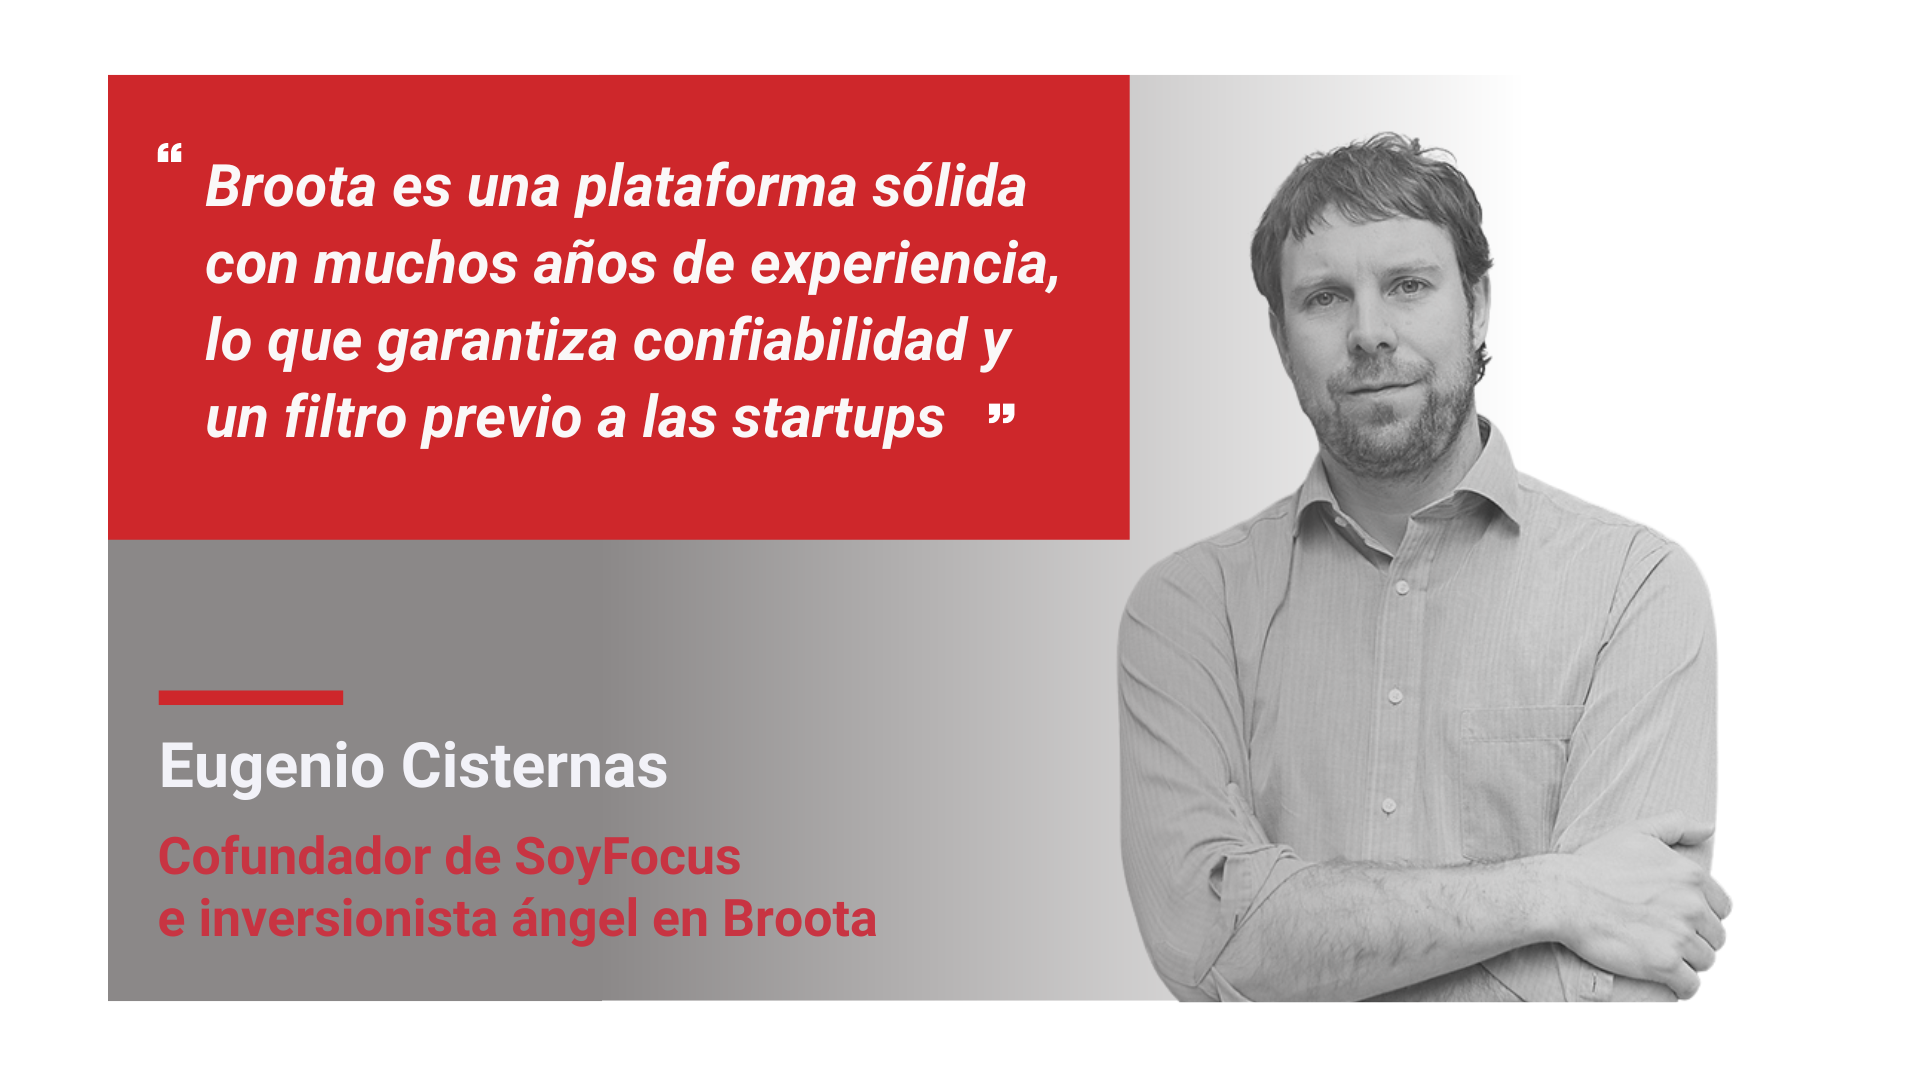 Eugenio Cisternas, CEO de SoyFocus: “Broota es una plataforma sólida con muchos años de experiencia, lo que garantiza confiabilidad y un filtro previo a las startups”